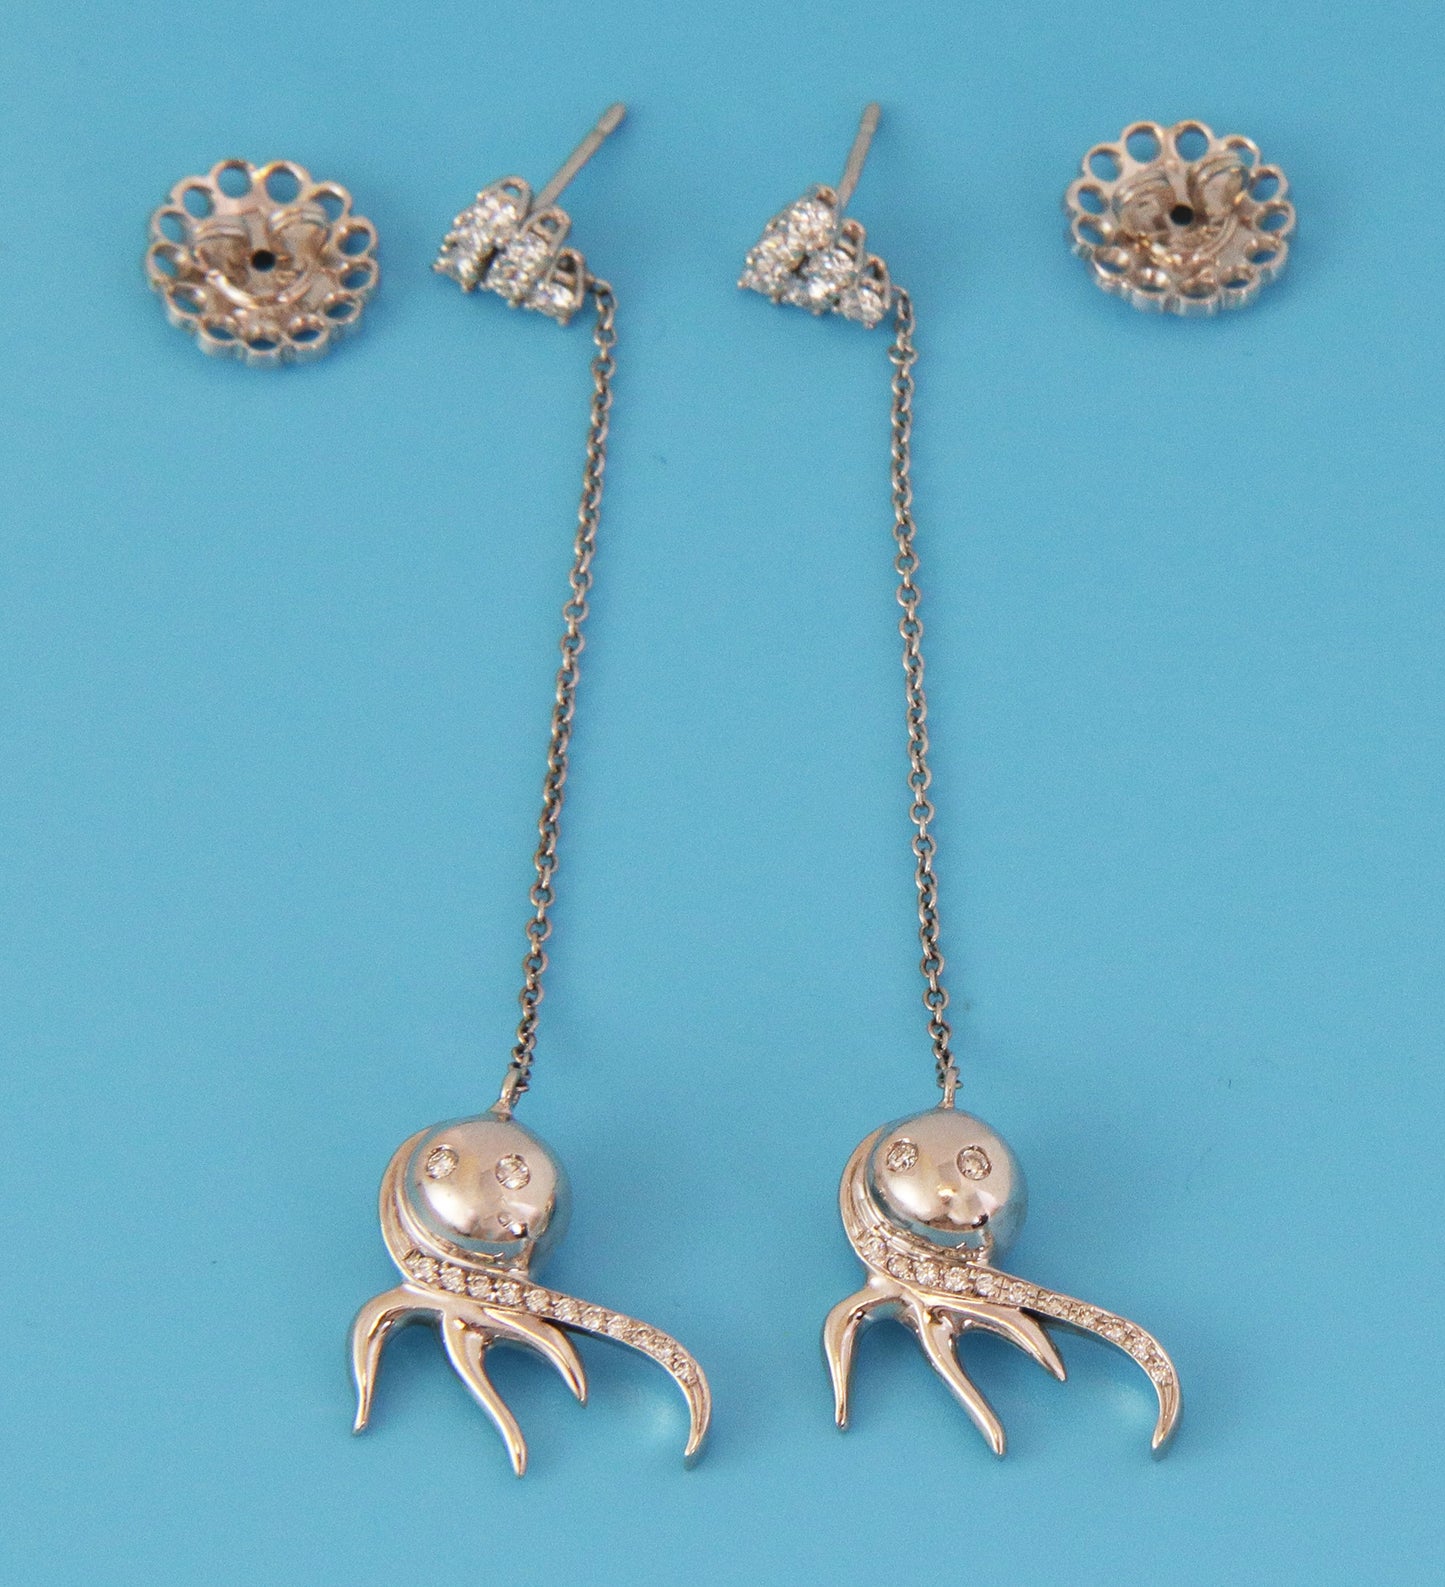 Zydo 18k White Gold Diamond Octopus Long Drop Dangle Earrings | Earrings | catalog, Designer Jewelry, Earrings, Zydo | Zydo